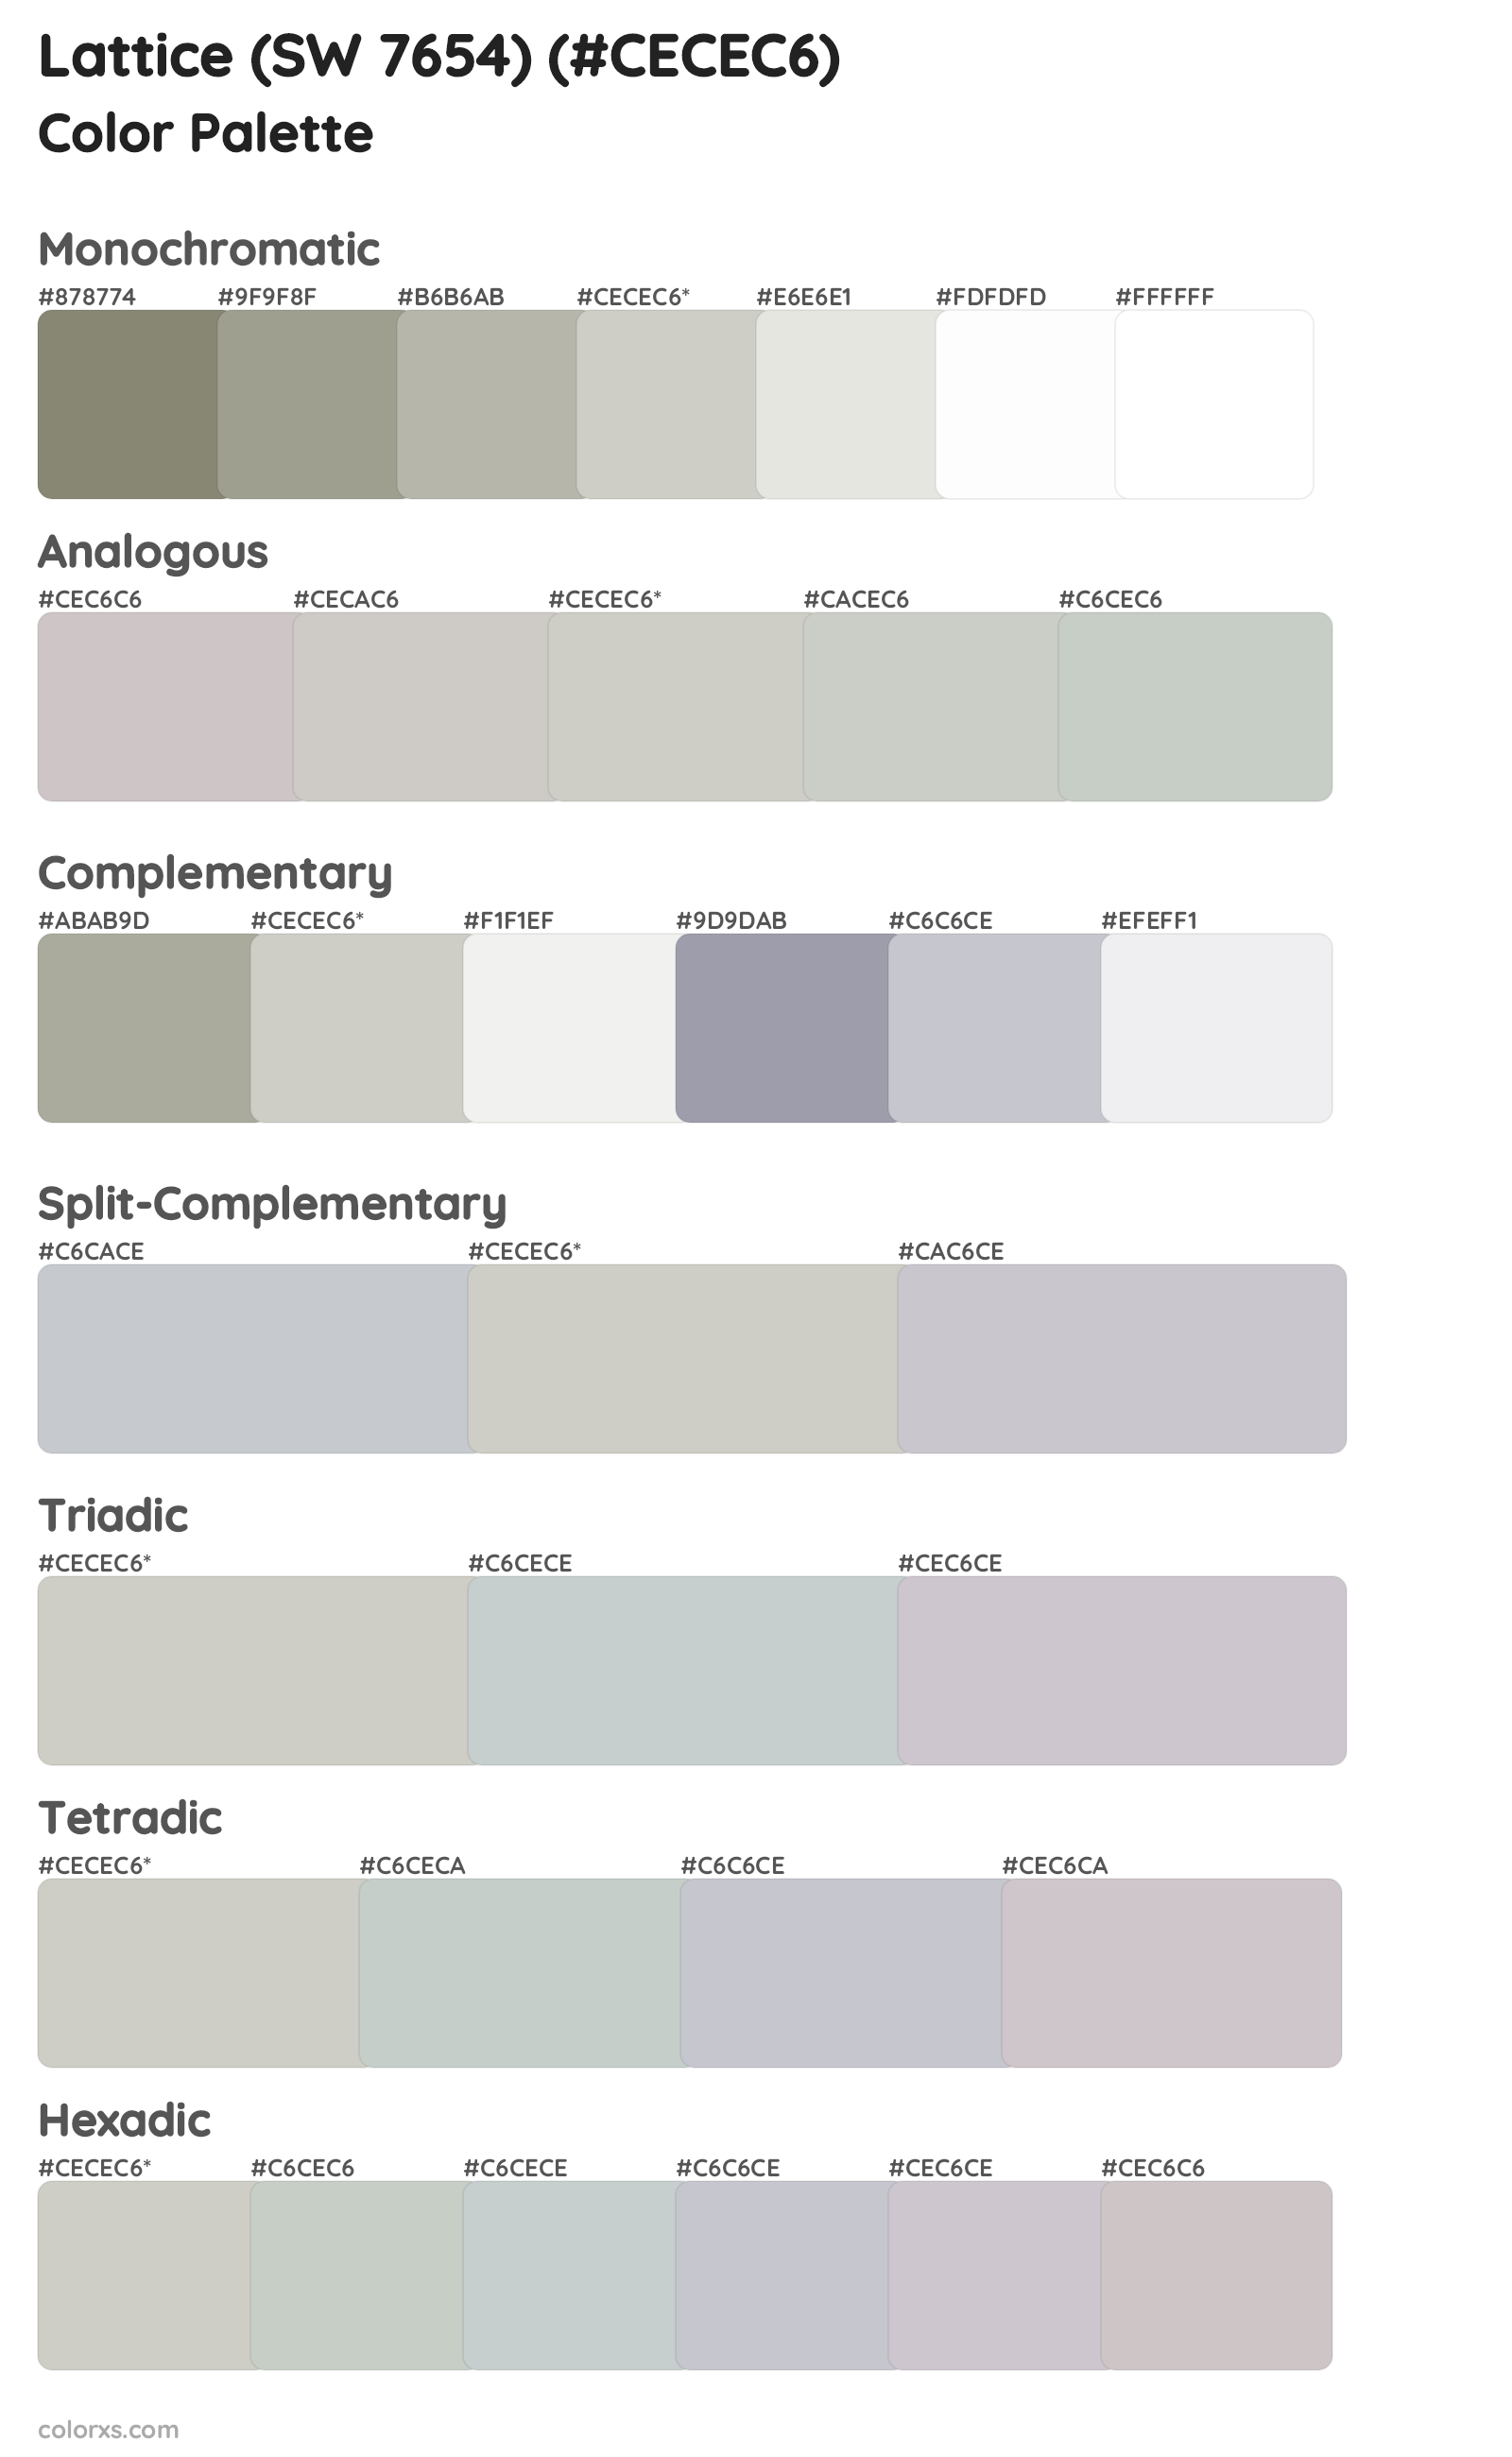 Lattice (SW 7654) Color Scheme Palettes